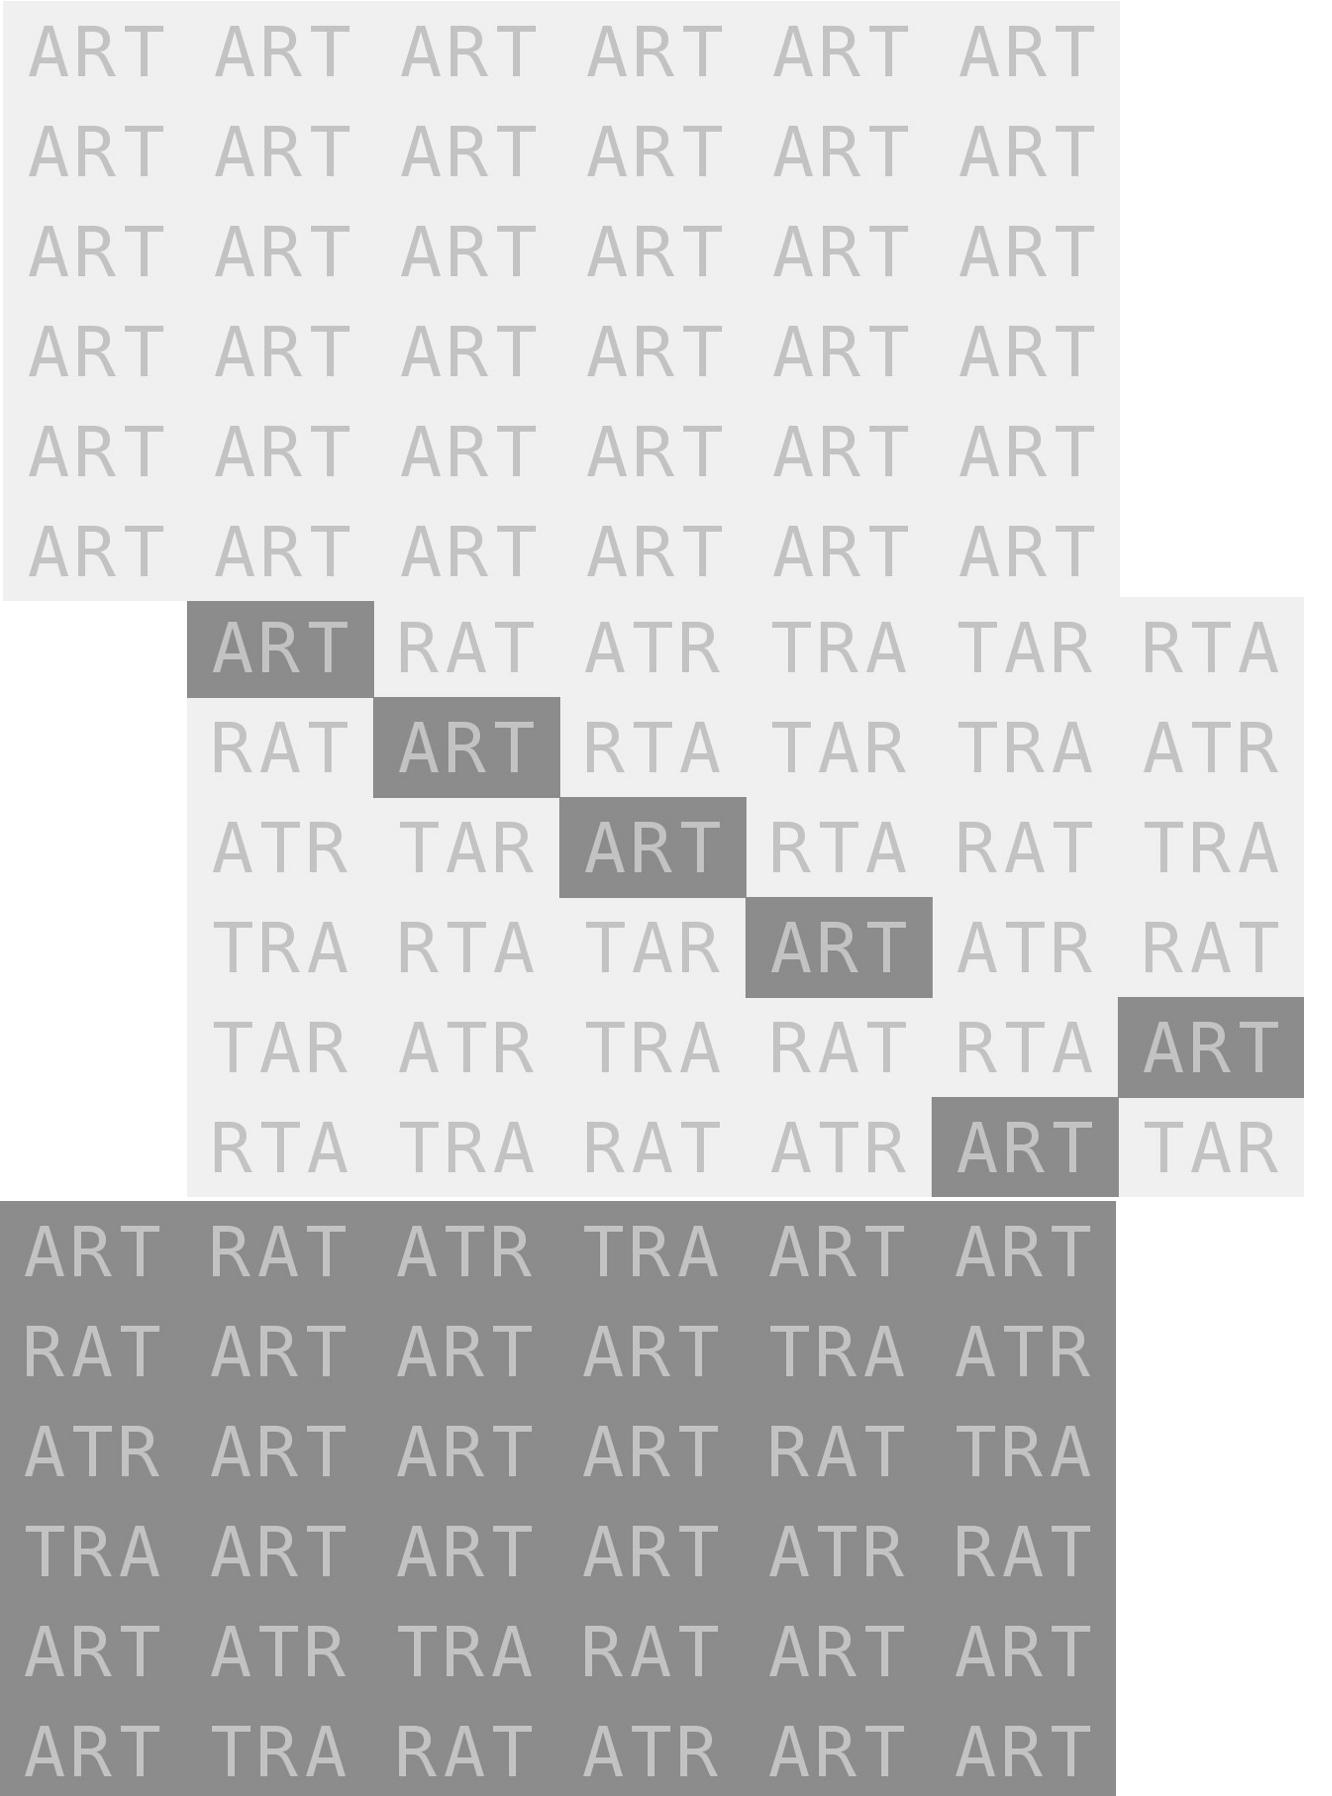 Image for entry 'ART RAT TAR'